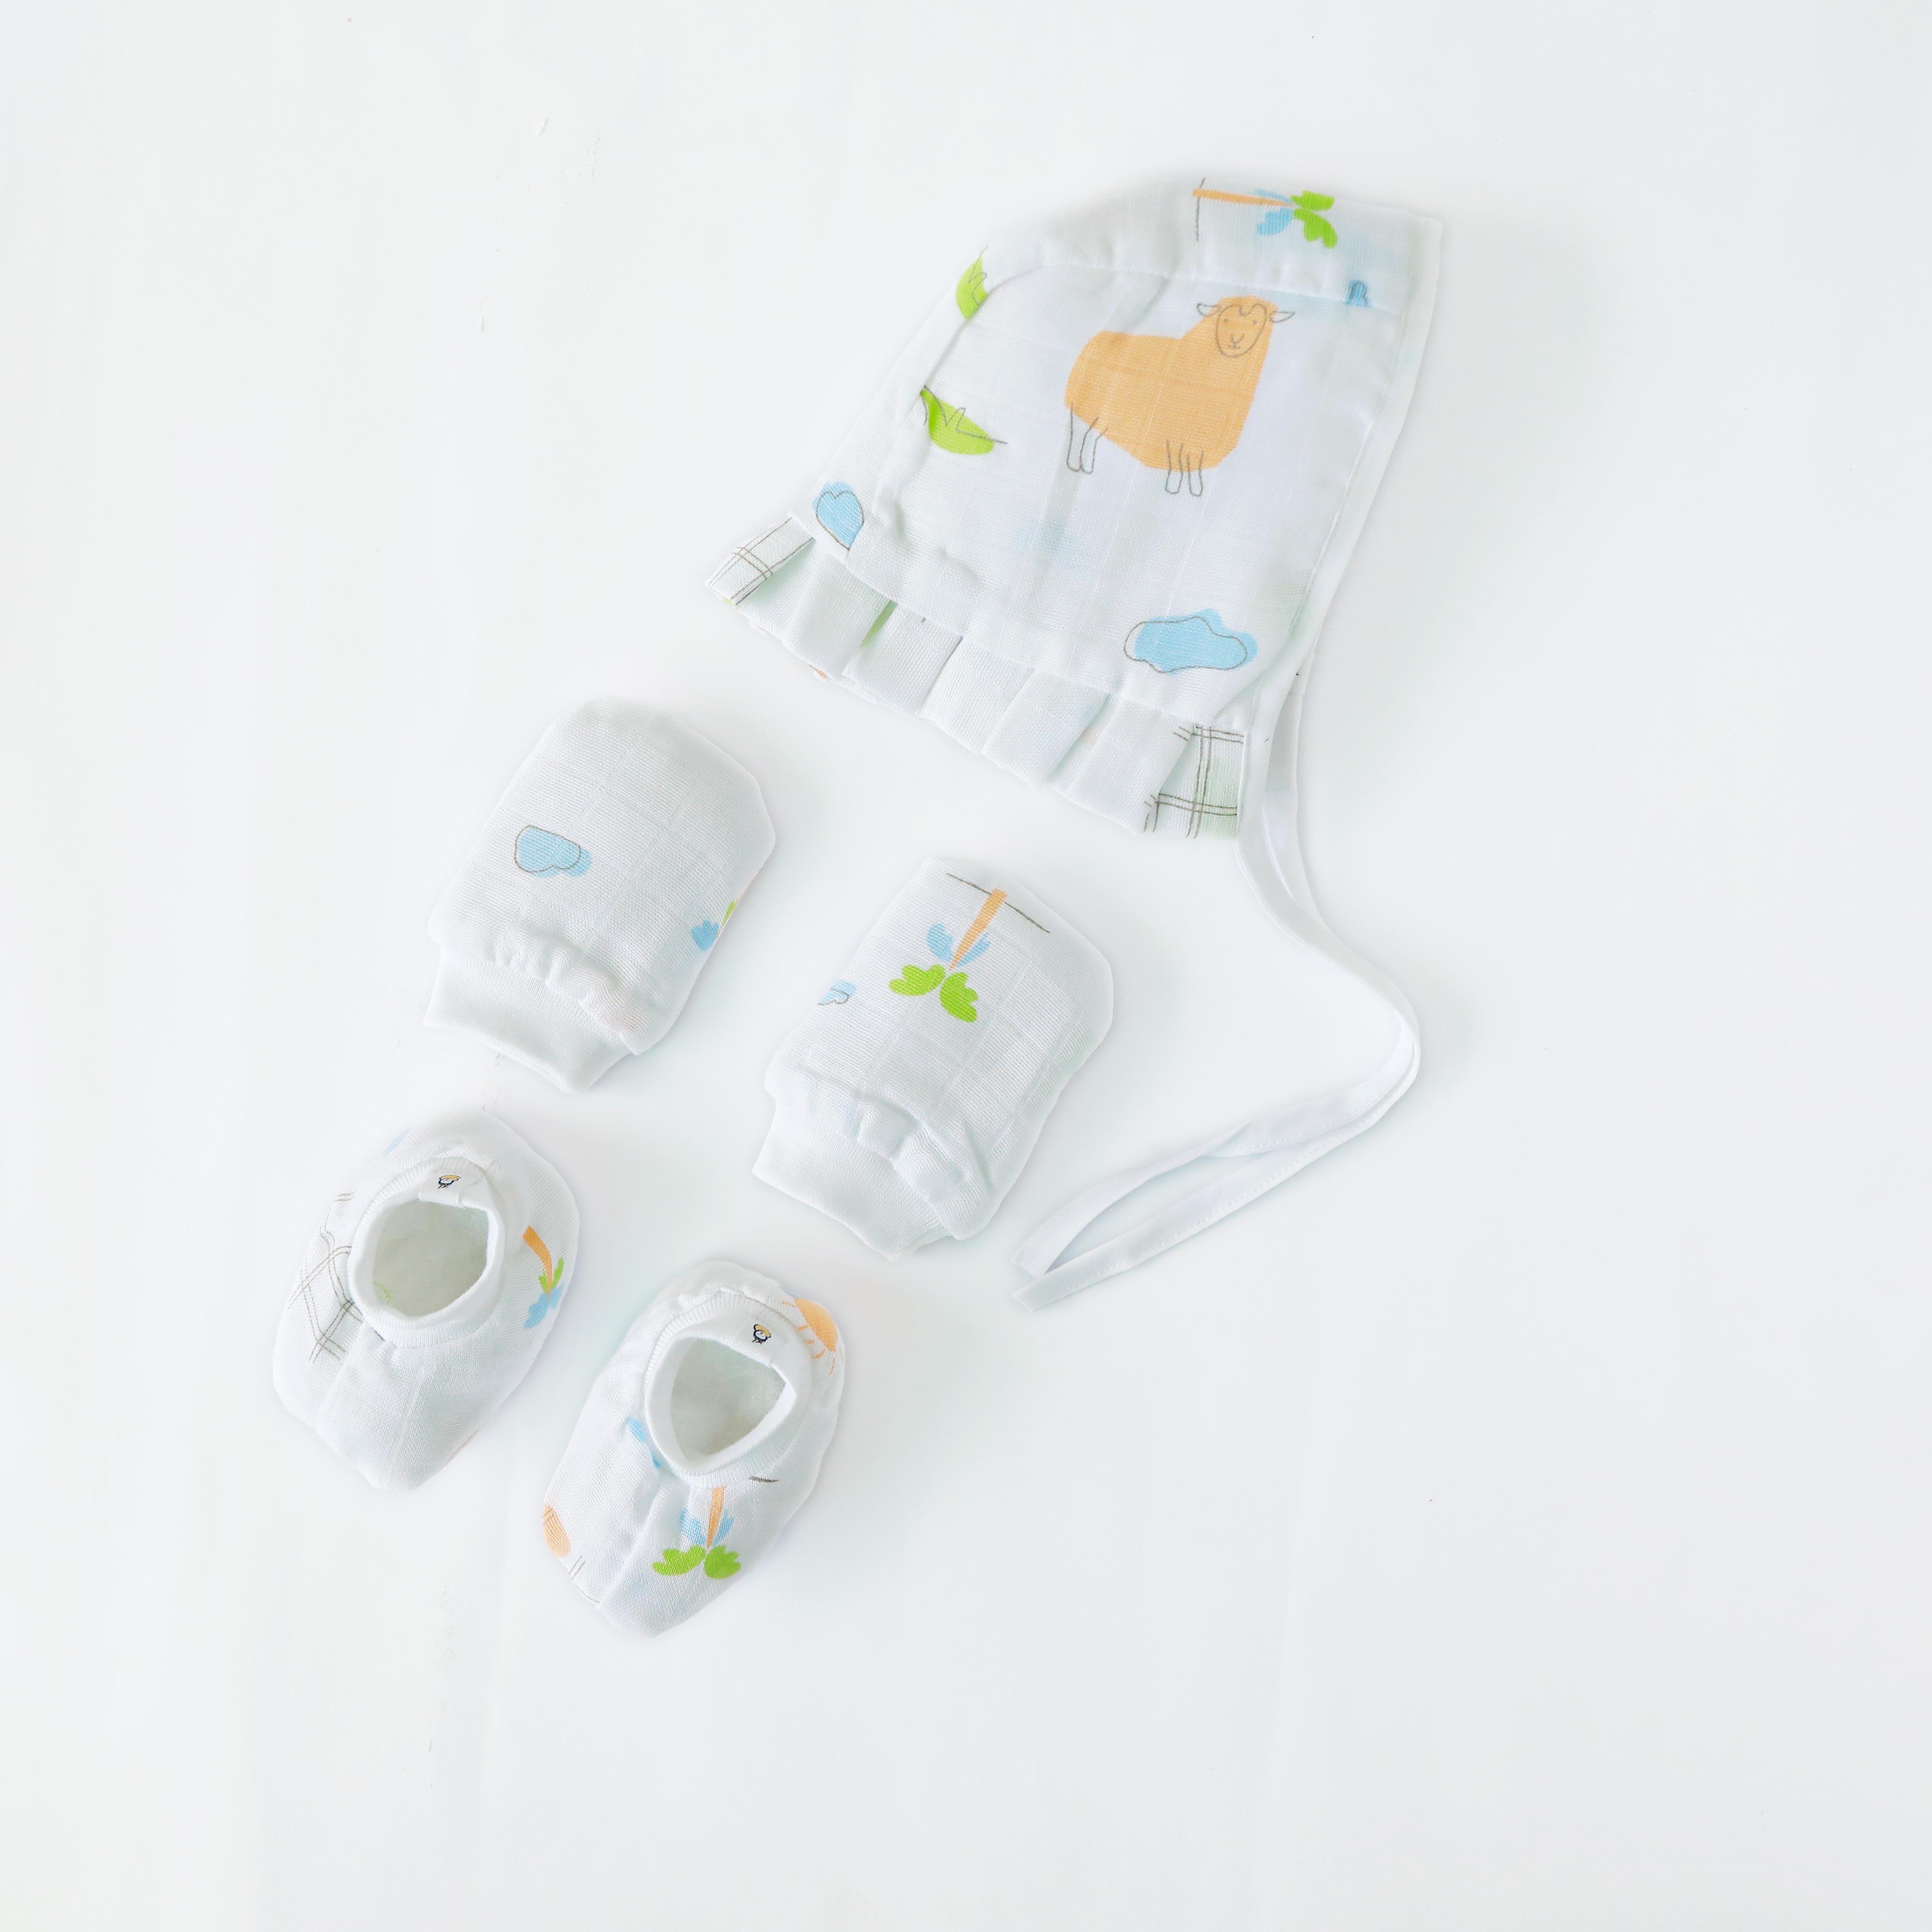 Baby essential Starter gift Kit - 6 piece set - Woolly Wonderland